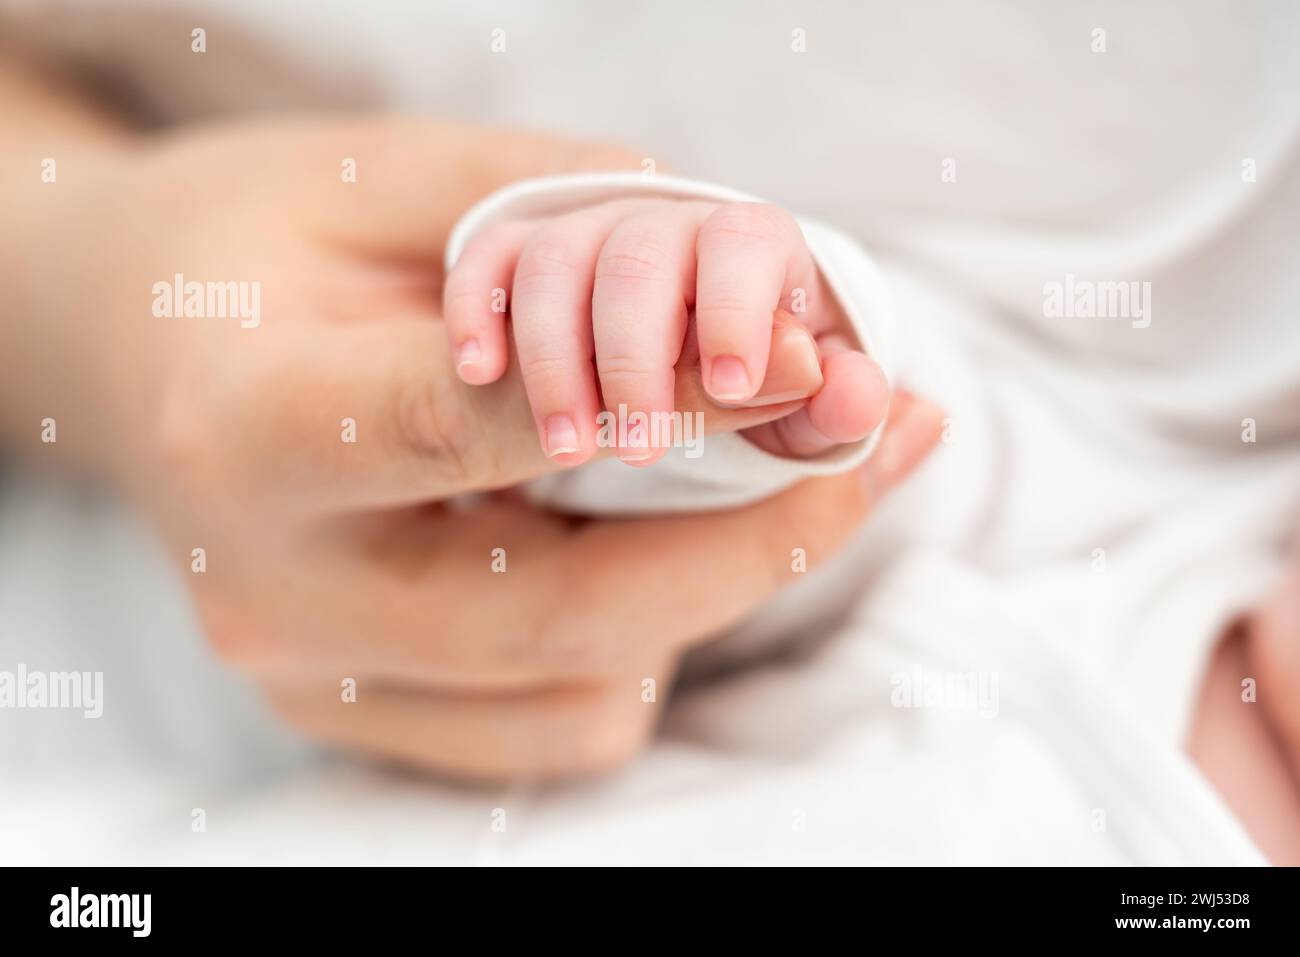 Das sanfte Greifen des Neugeborenen am Finger der Mutter ruft Emotionen hervor. Konzept mütterlicher Verbundenheit und Vertrauen Stockfoto